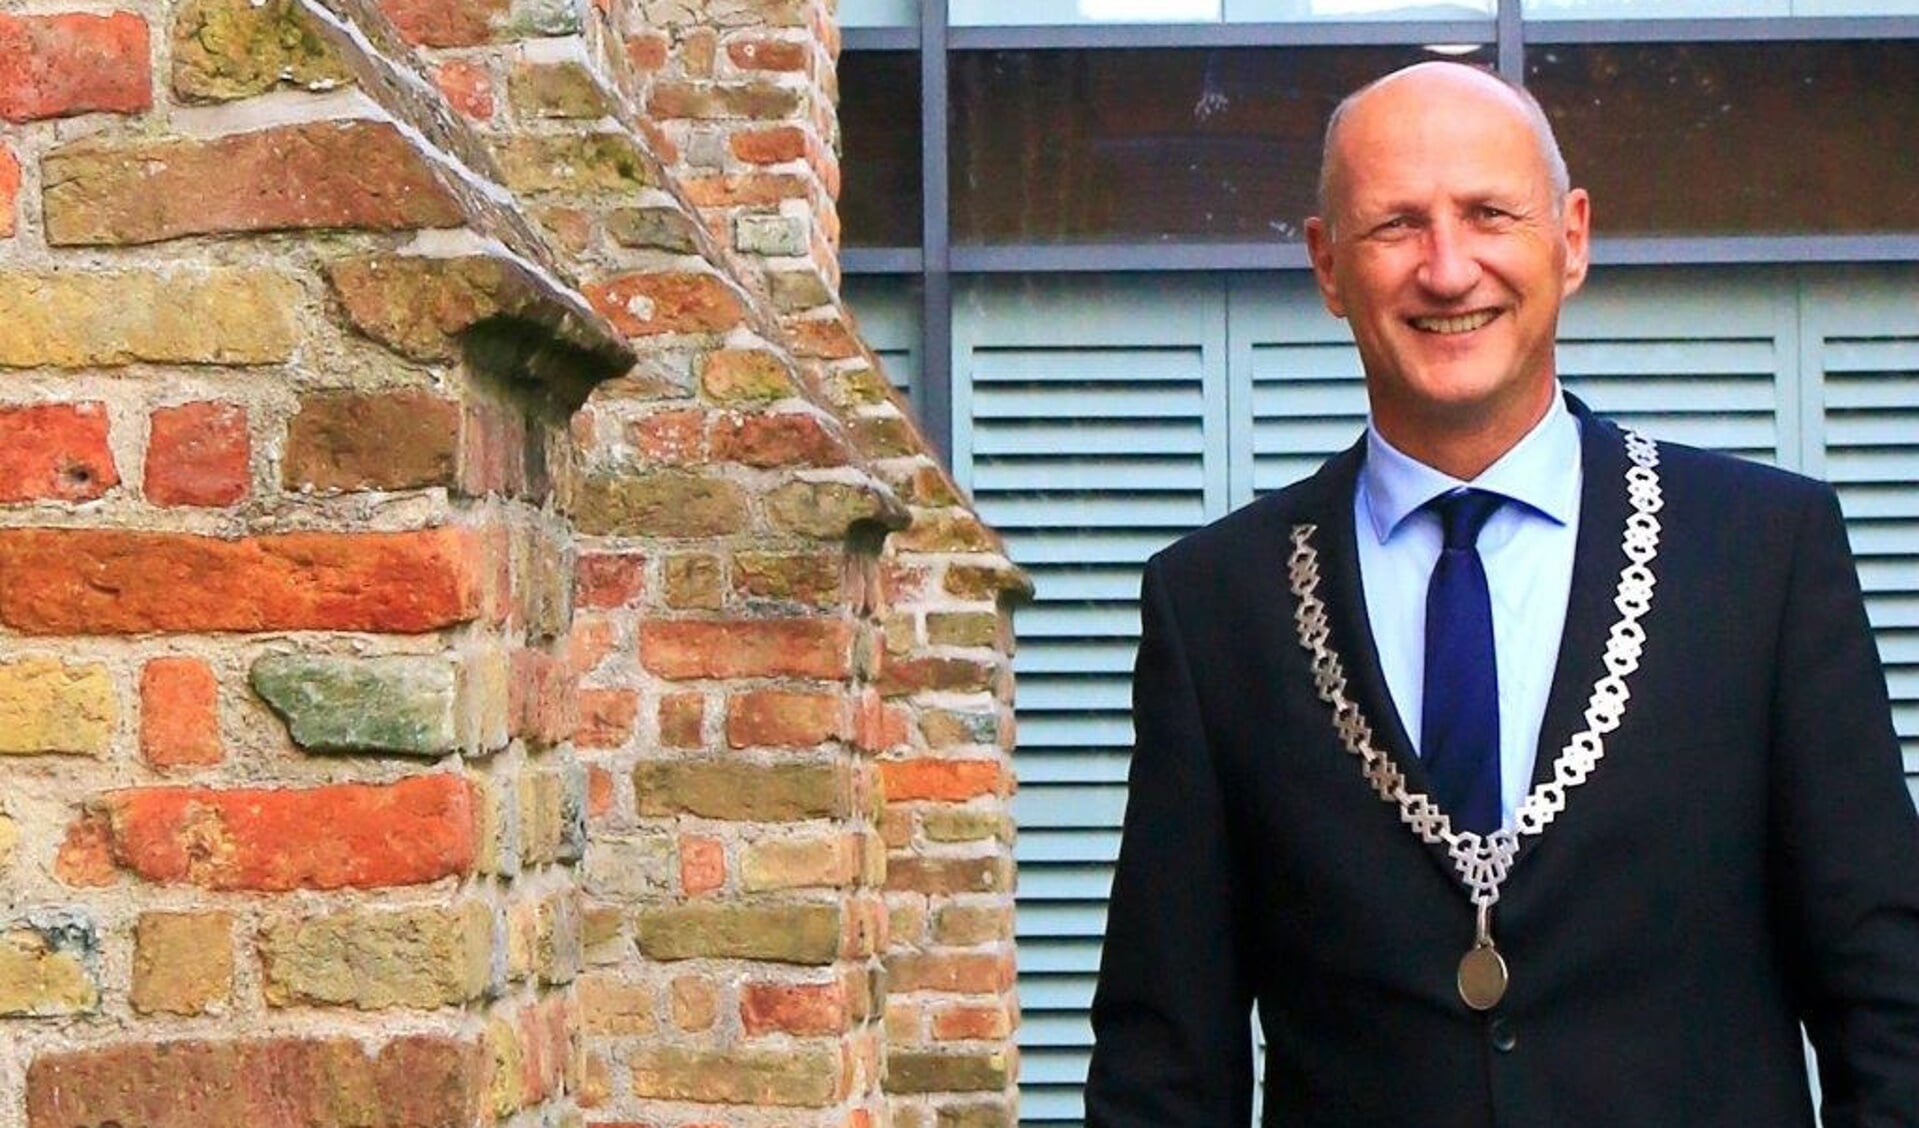 Burgemeester Rob van der Zwaag van de gemeente Veere.